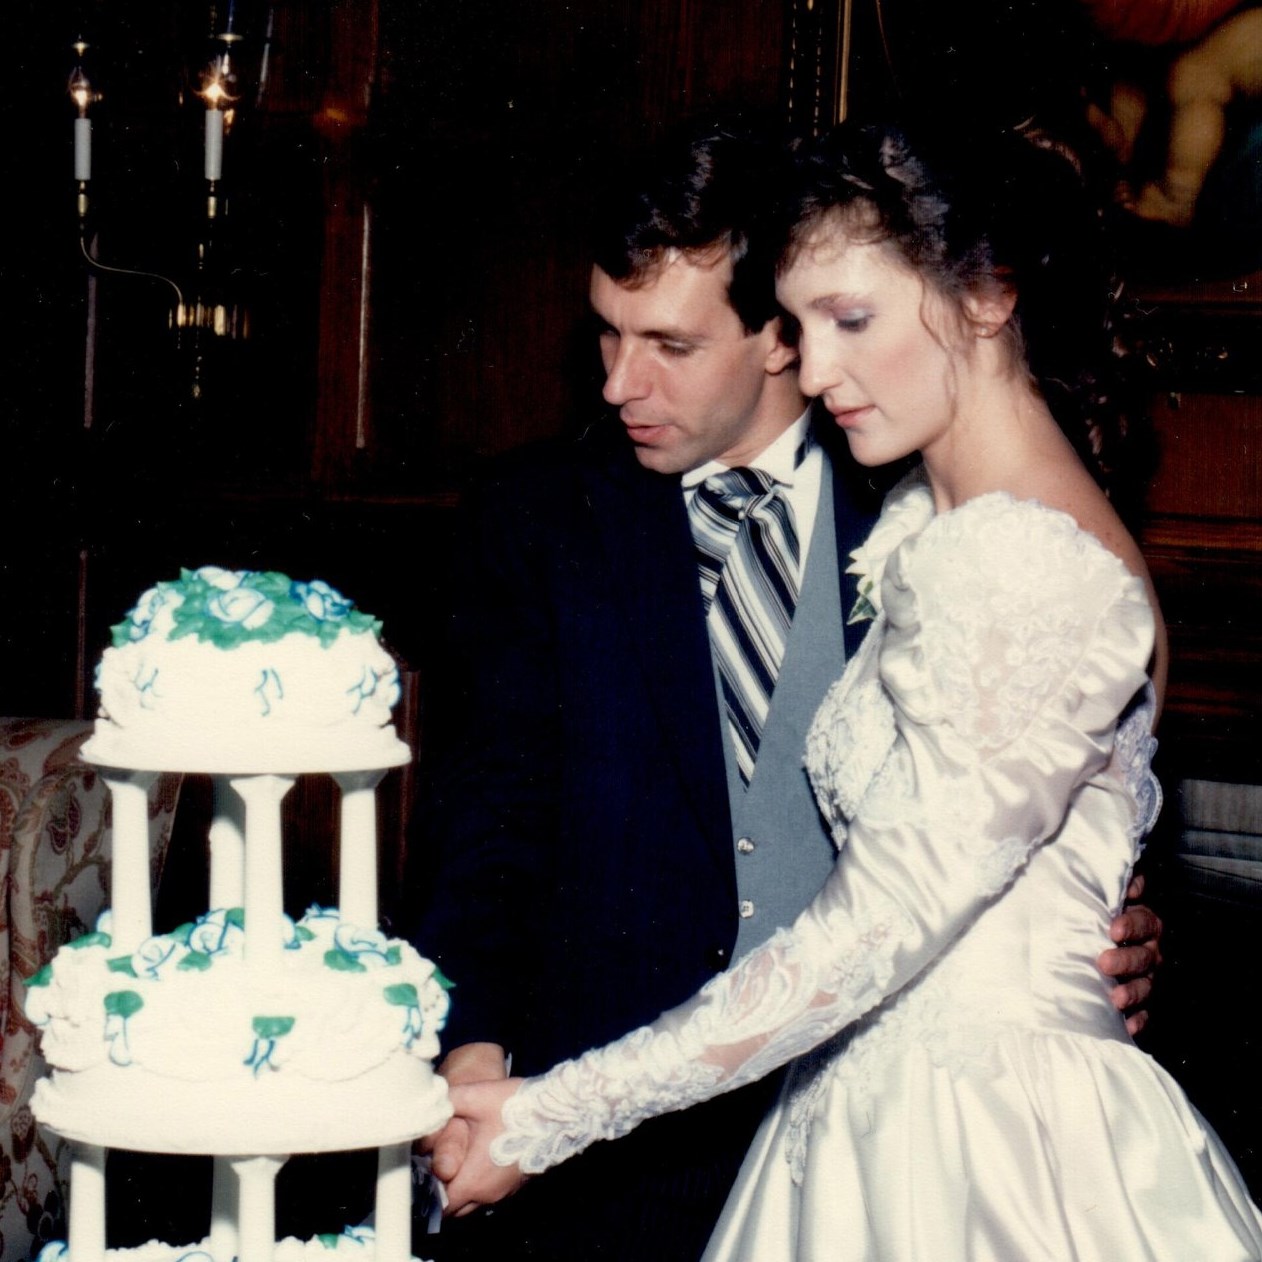 Don and Susanne Allen cutting wedding cake